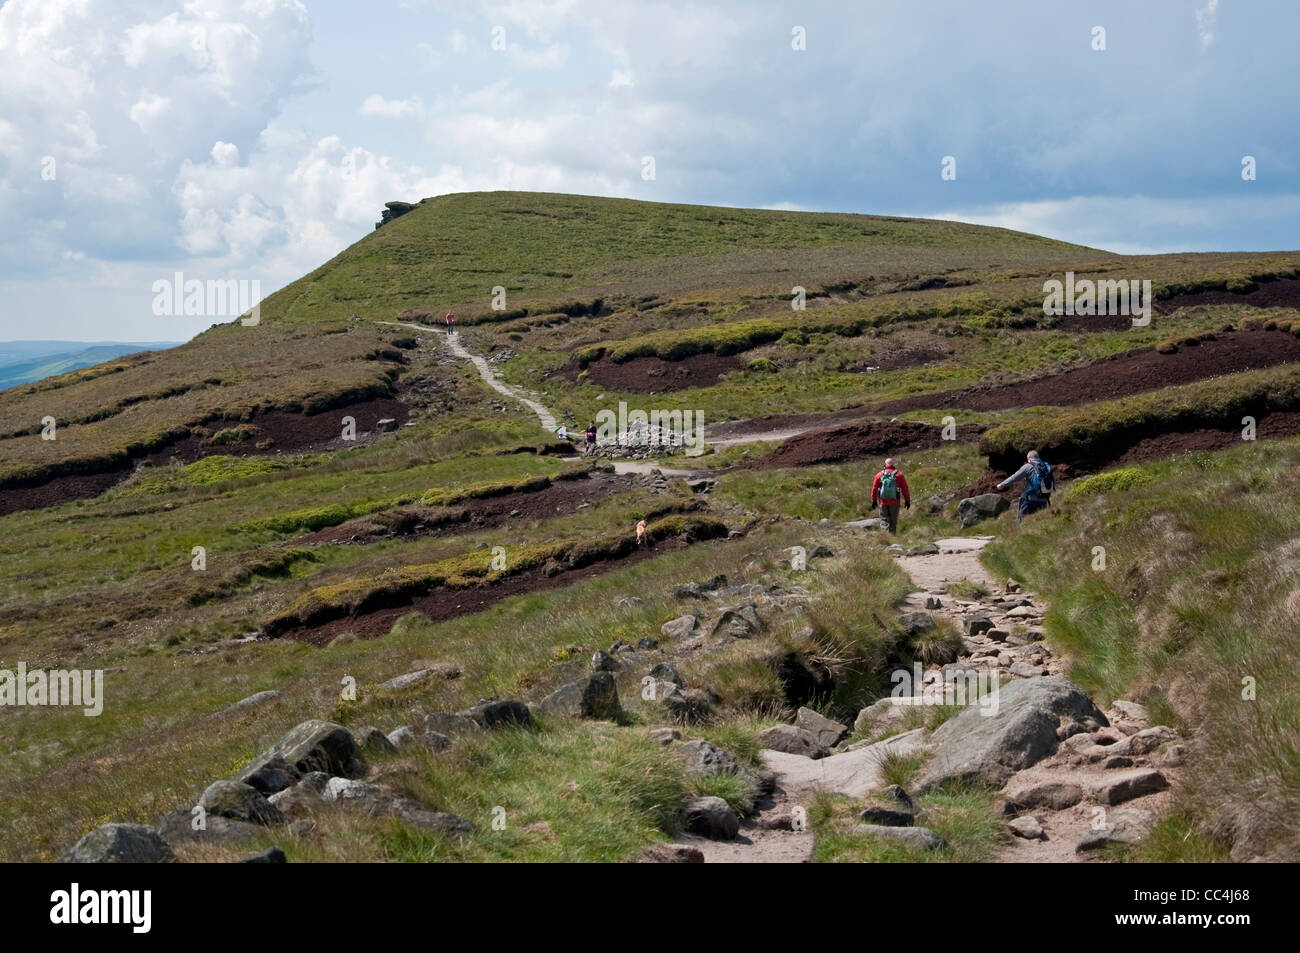 Il percorso si snoda lungo i bordi del sud di Kinder Scout in direzione della specie suina torna, Parco Nazionale di Peak District. Foto Stock